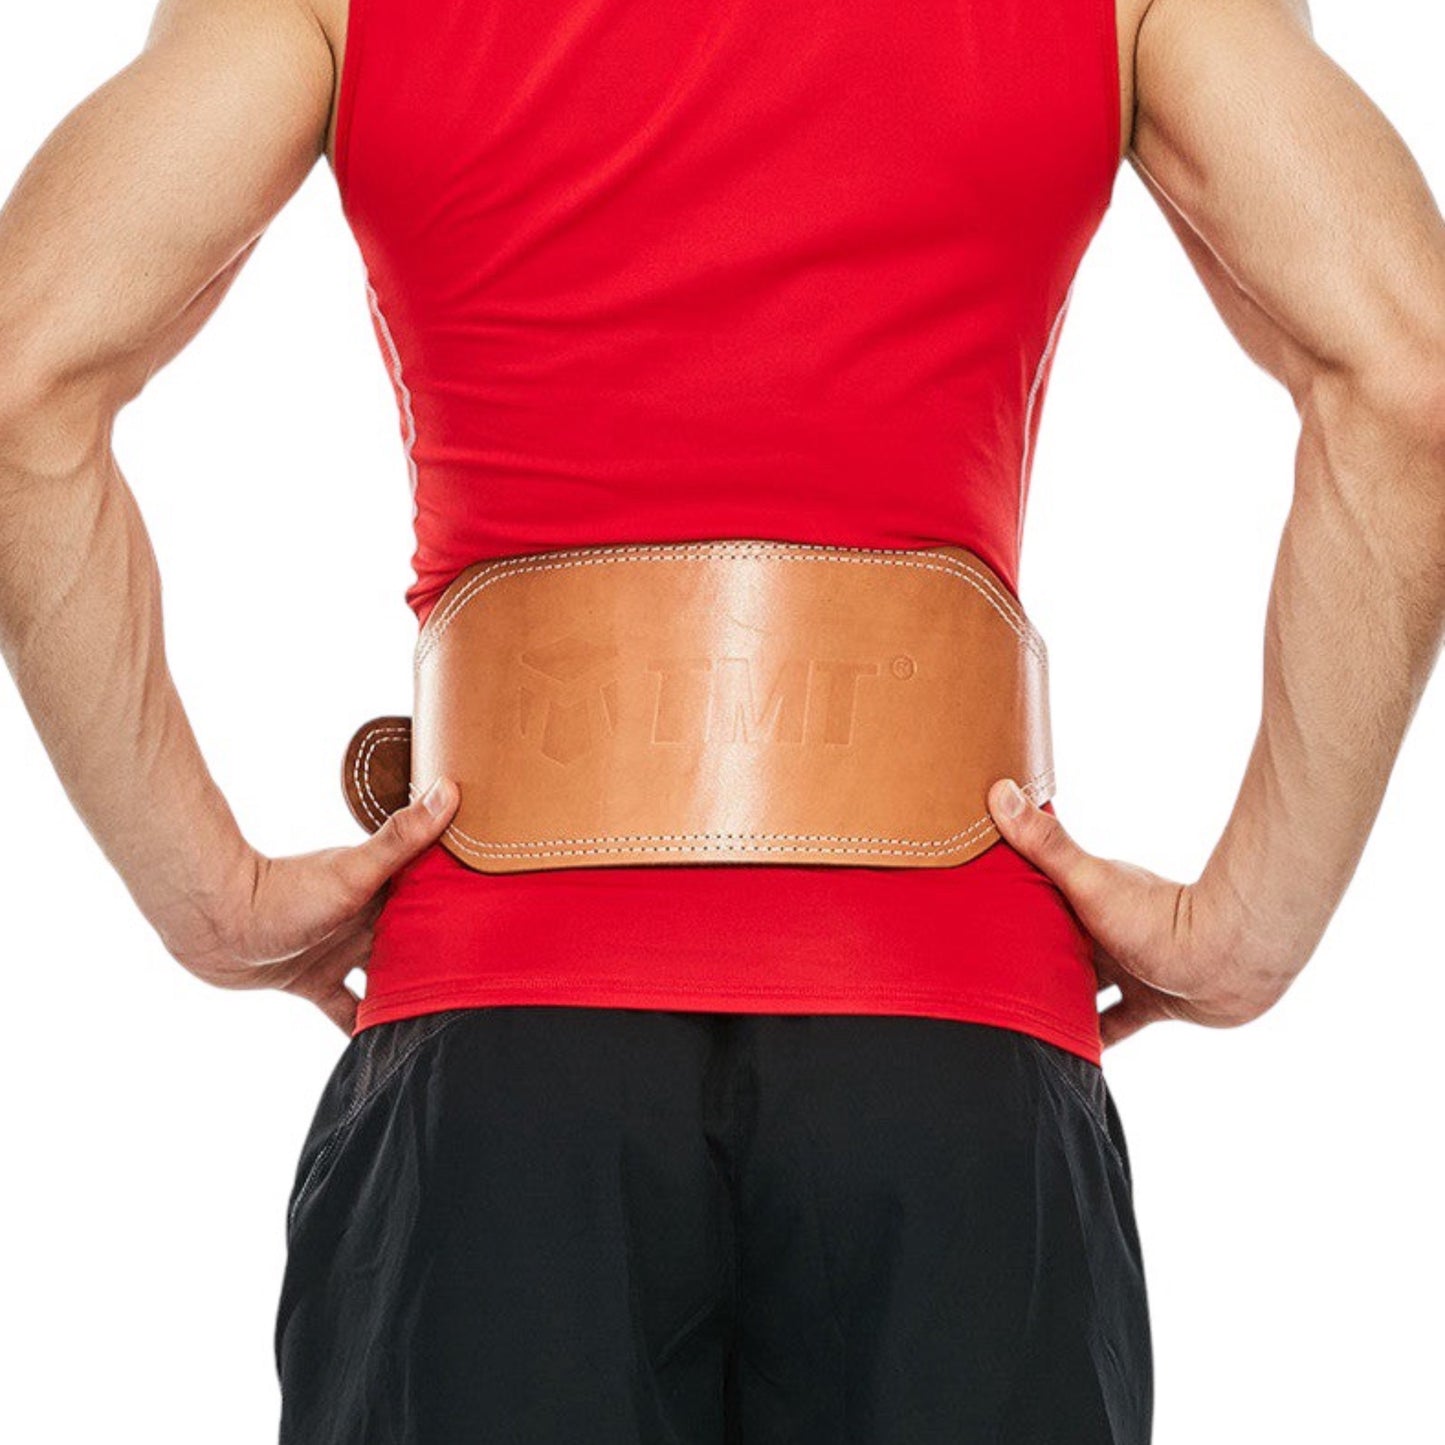 Fitness waist belt